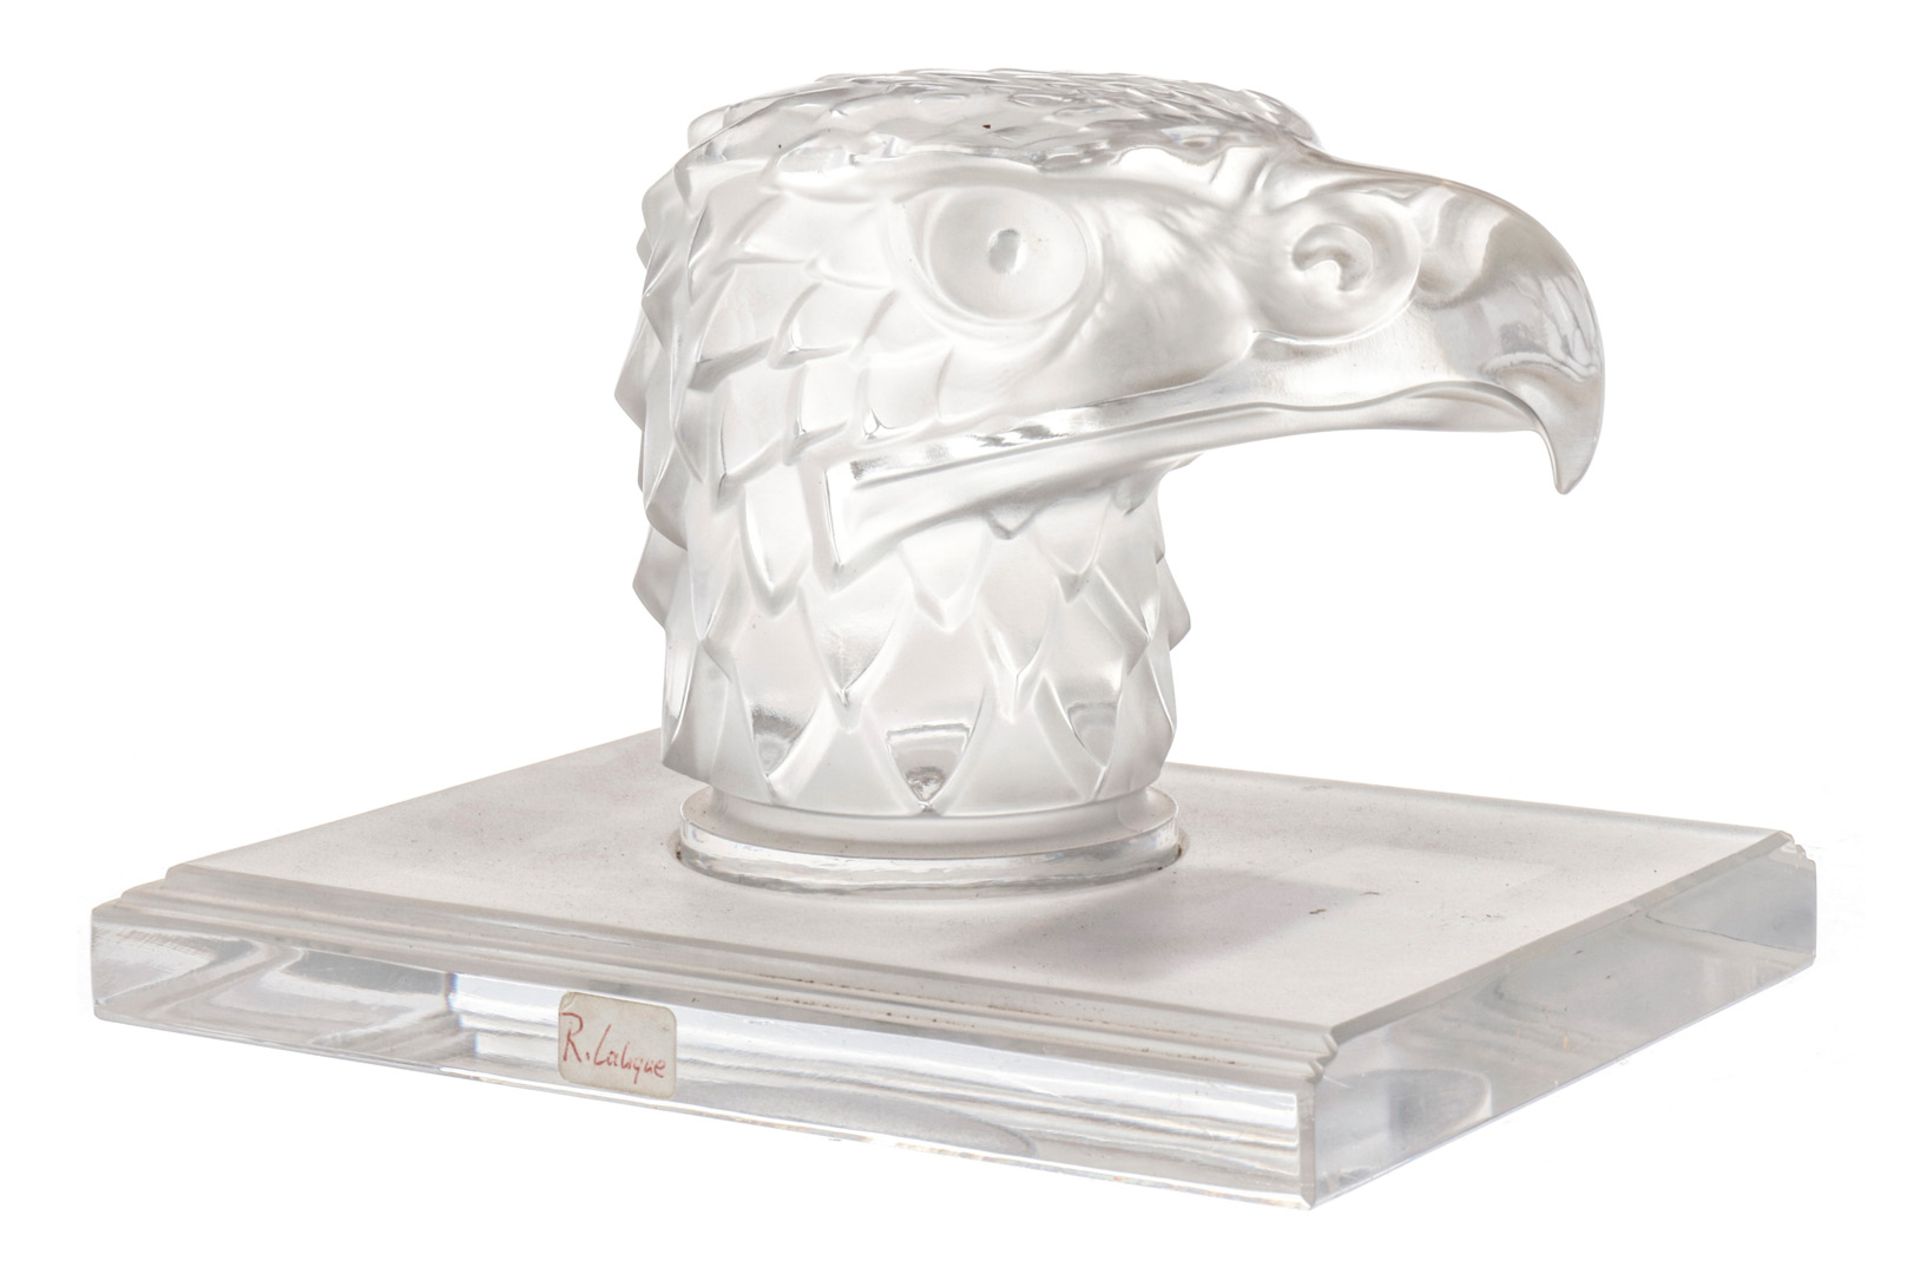 Kühlerfigur Adler, Signatur R. Lalique, Glas auf Sockel, über rechtem Auge kleiner Absprung, L 18